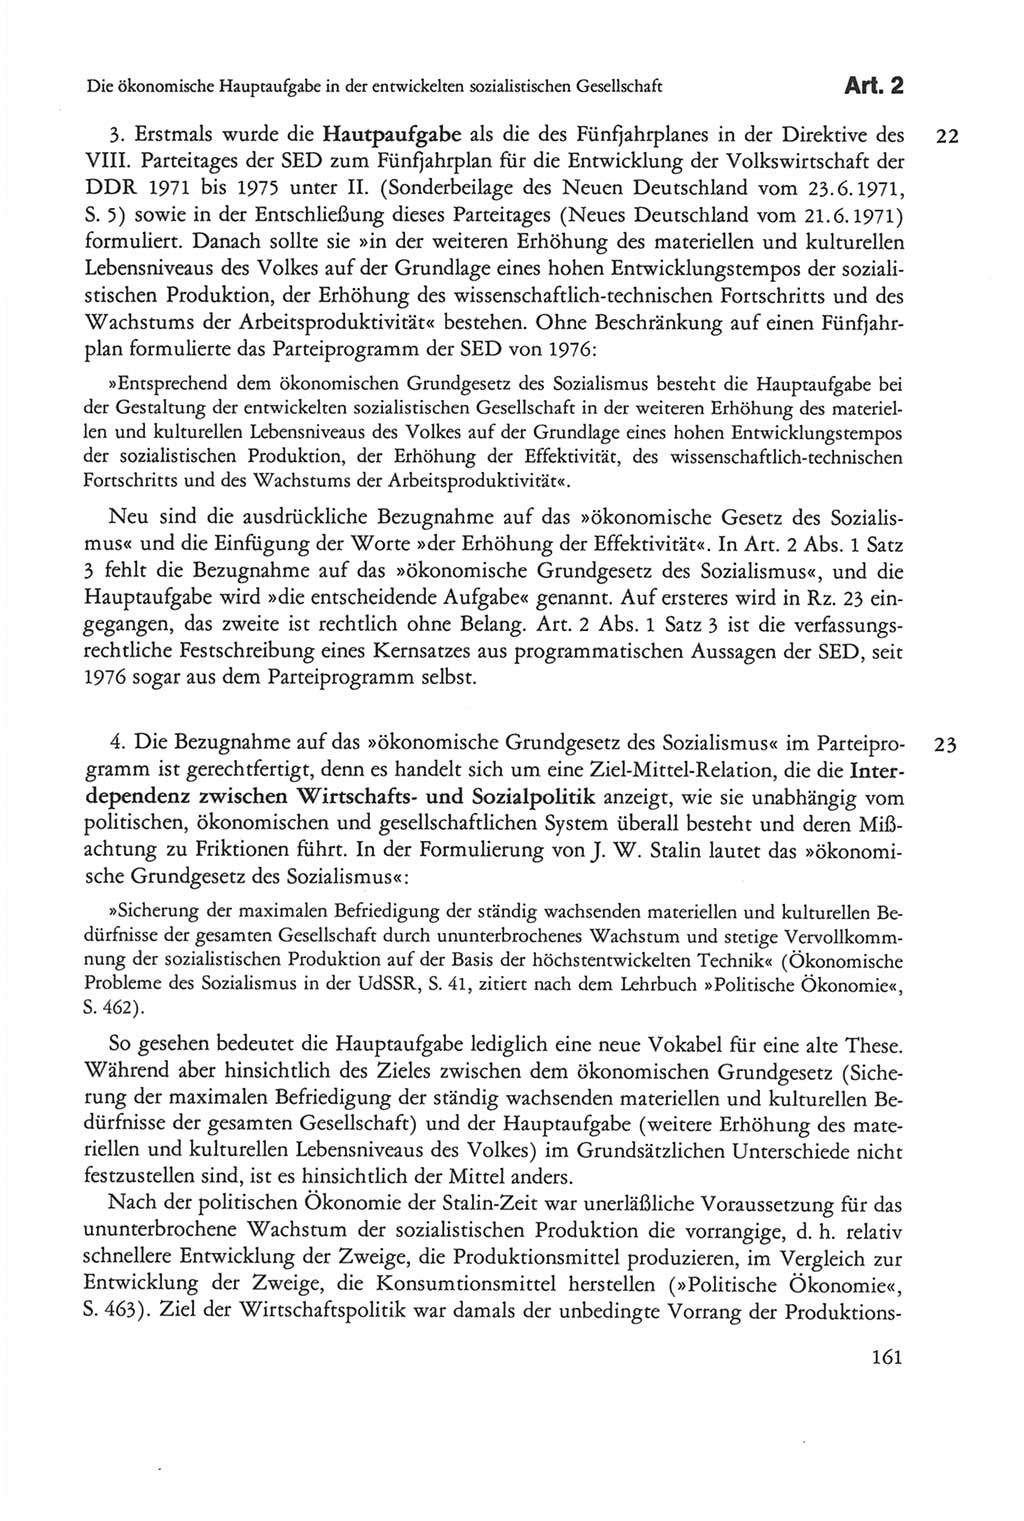 Die sozialistische Verfassung der Deutschen Demokratischen Republik (DDR), Kommentar mit einem Nachtrag 1997, Seite 161 (Soz. Verf. DDR Komm. Nachtr. 1997, S. 161)